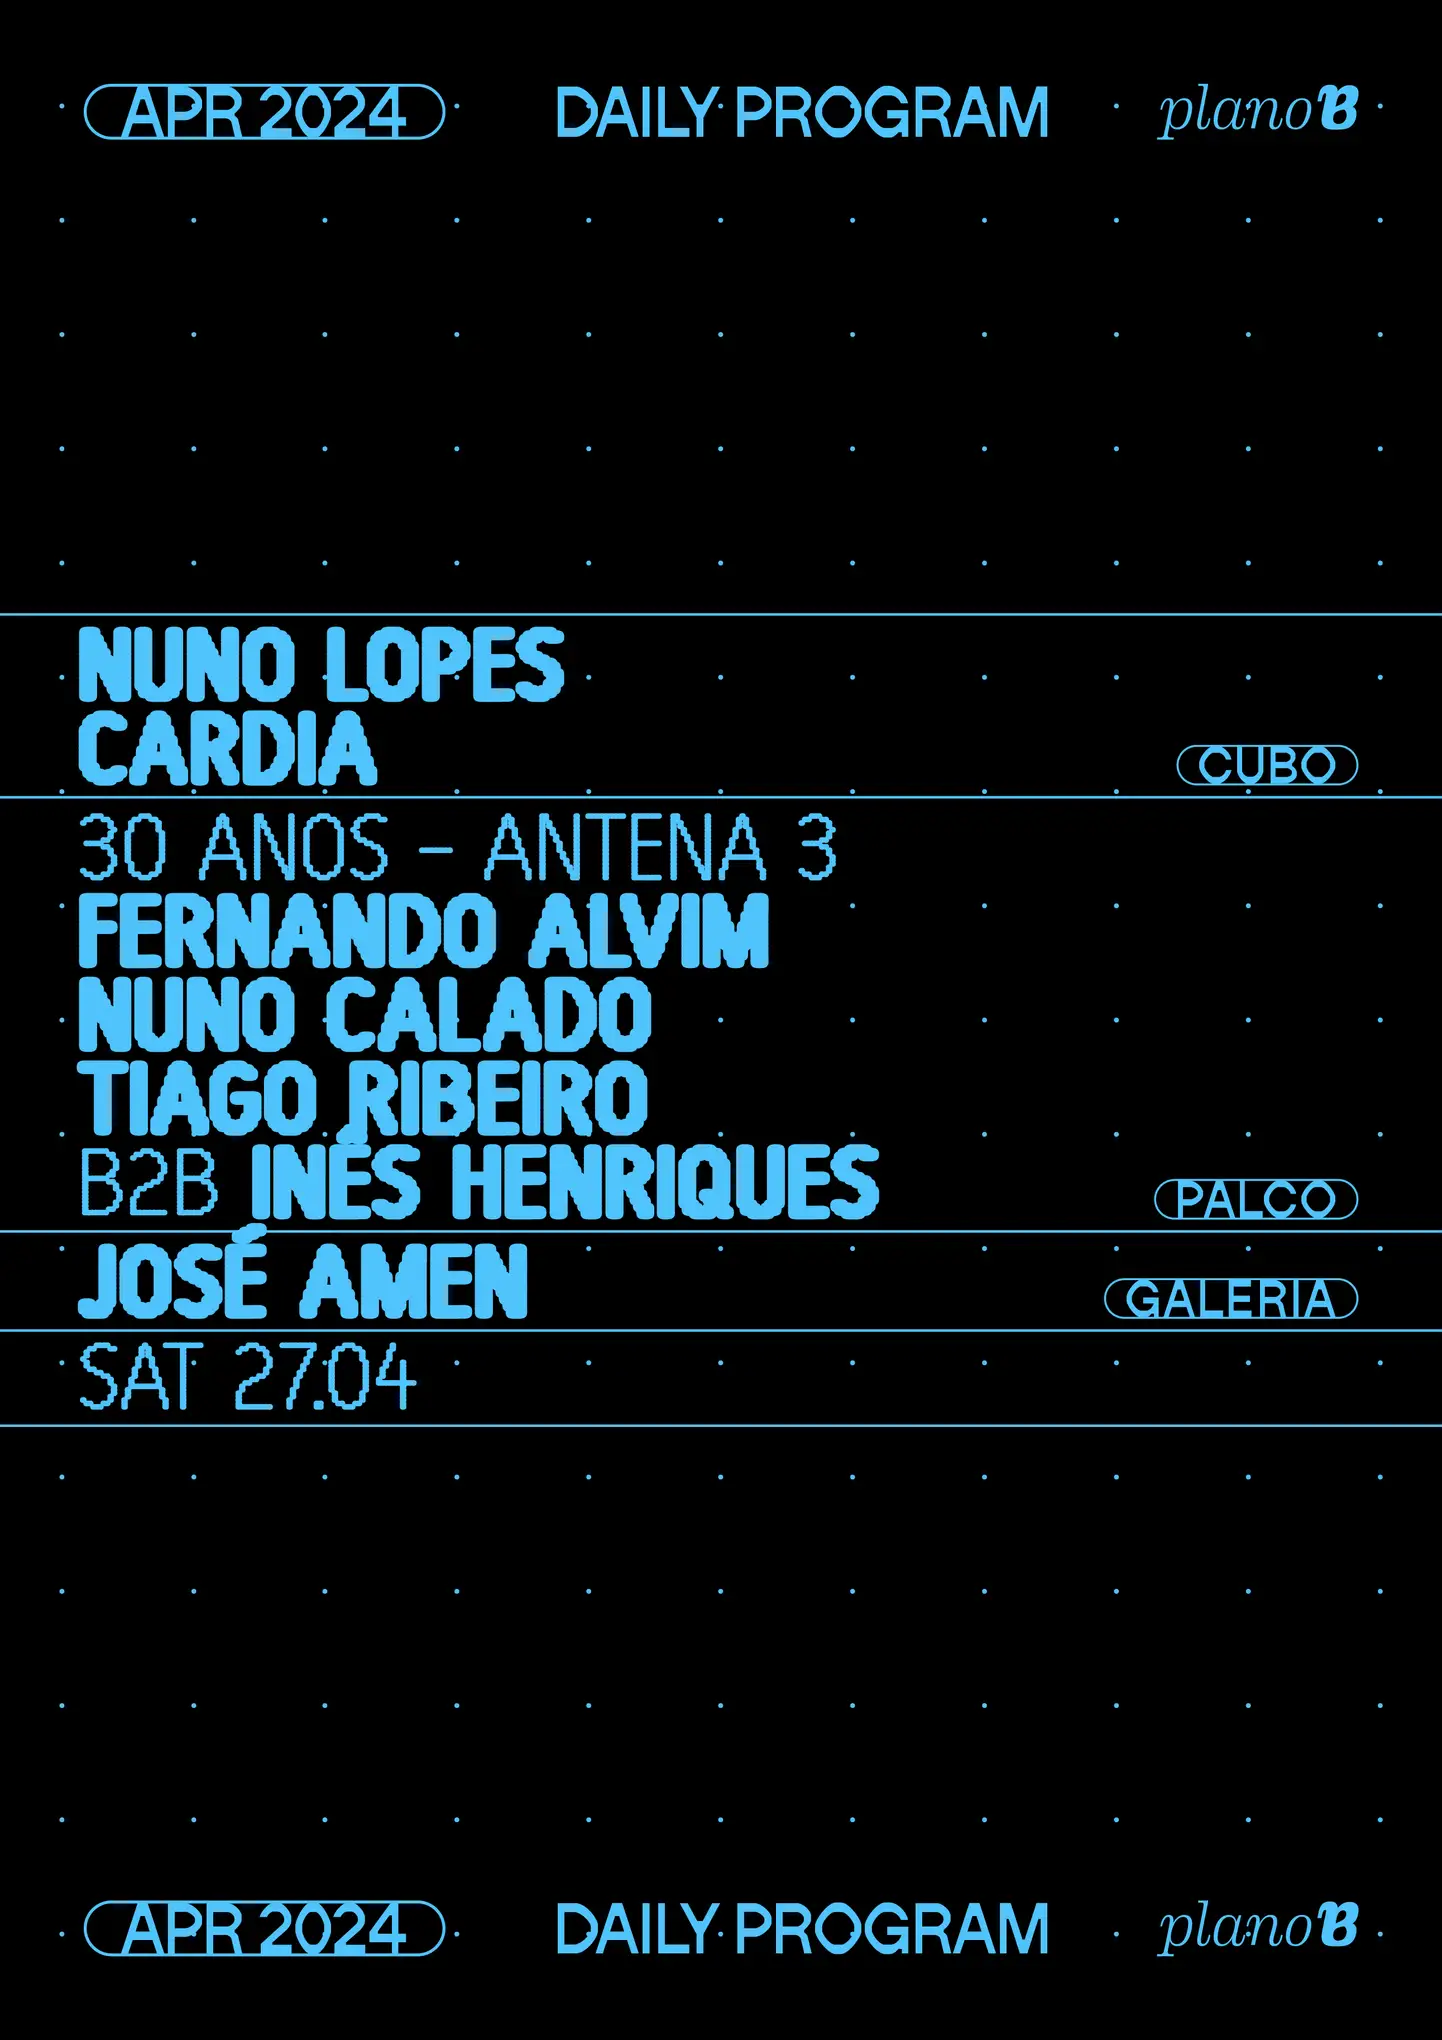 Nuno Lopes + Cardia - Plano B